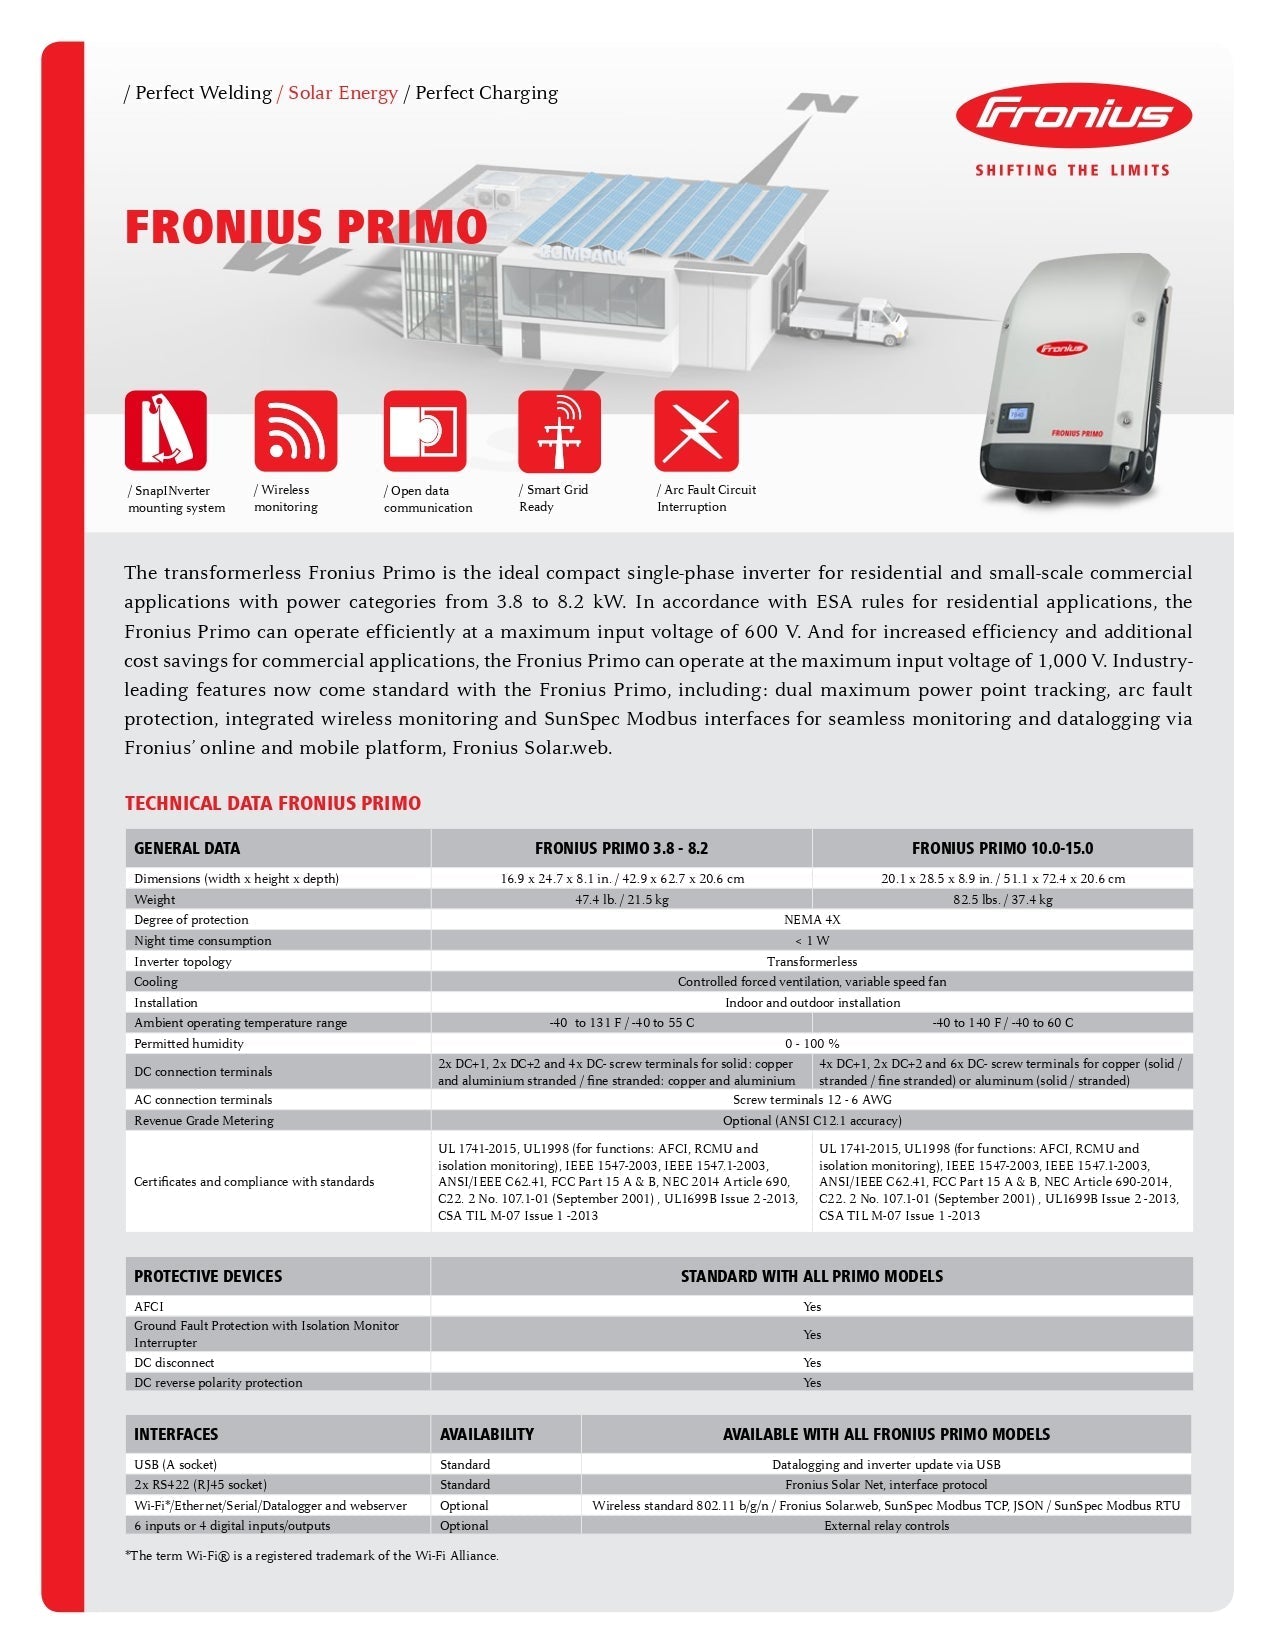 Fronius - Primo 6.0-1 Full